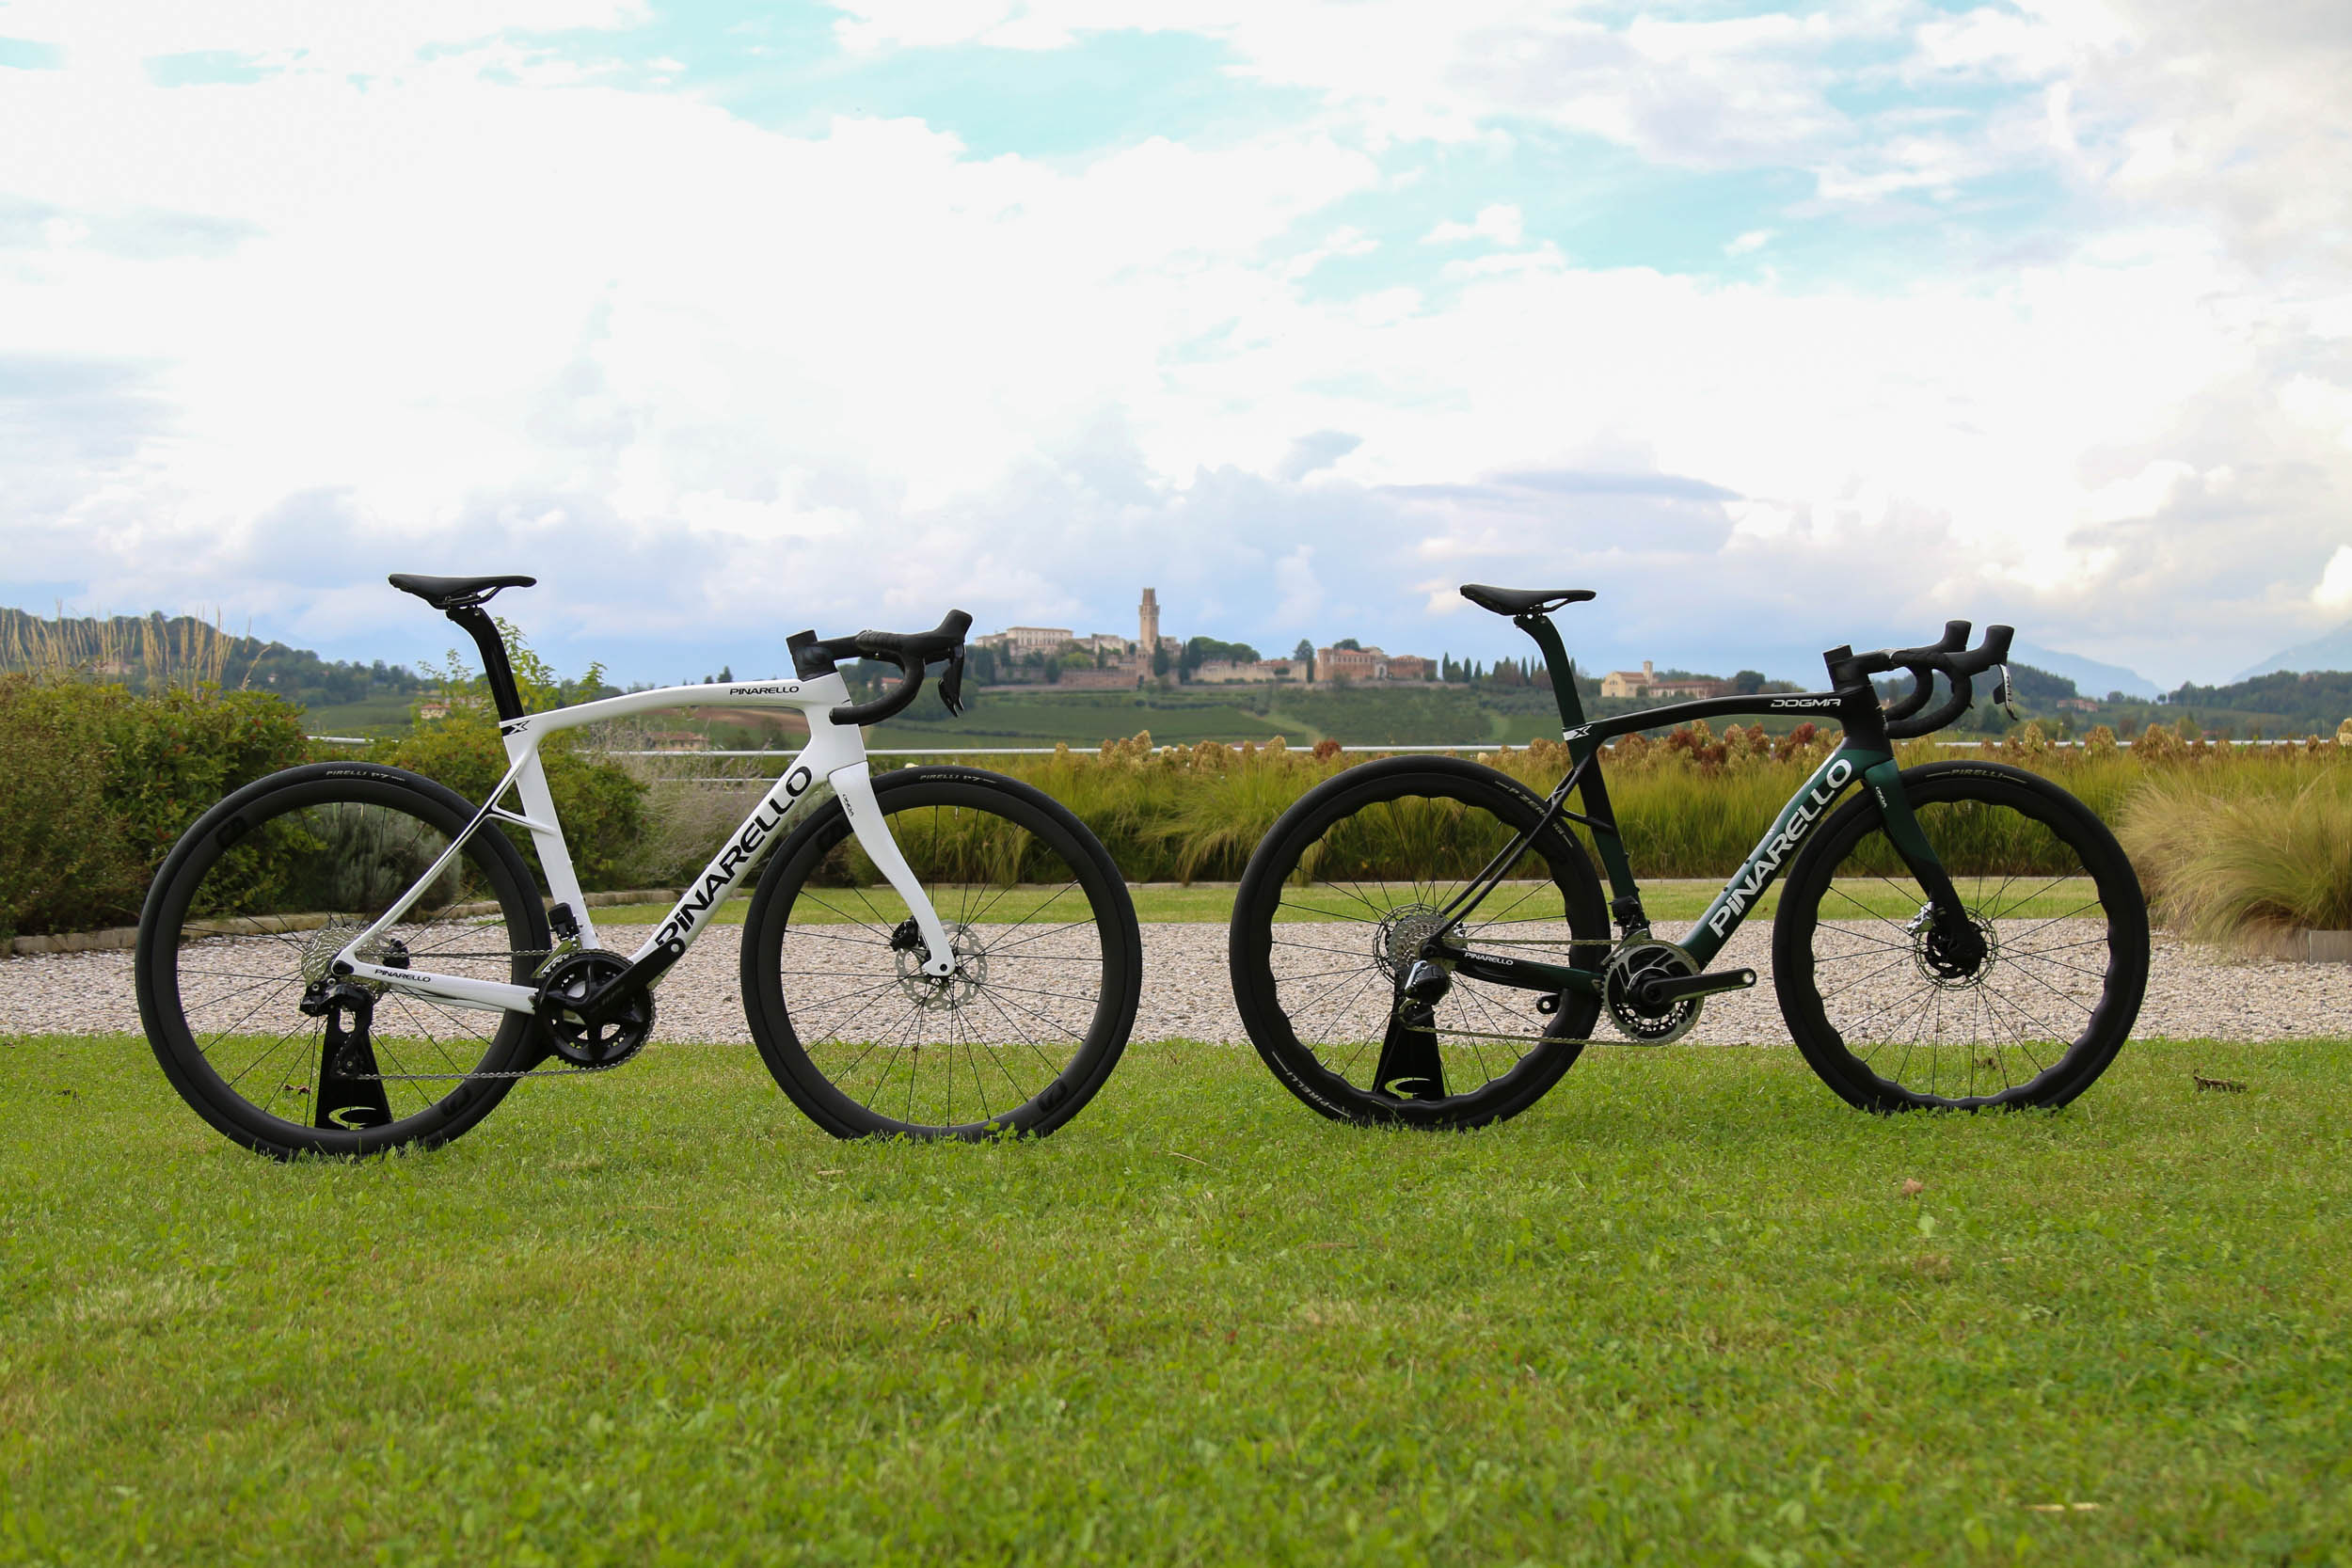 Pinarello Dogma X endurance road bike with X-stays